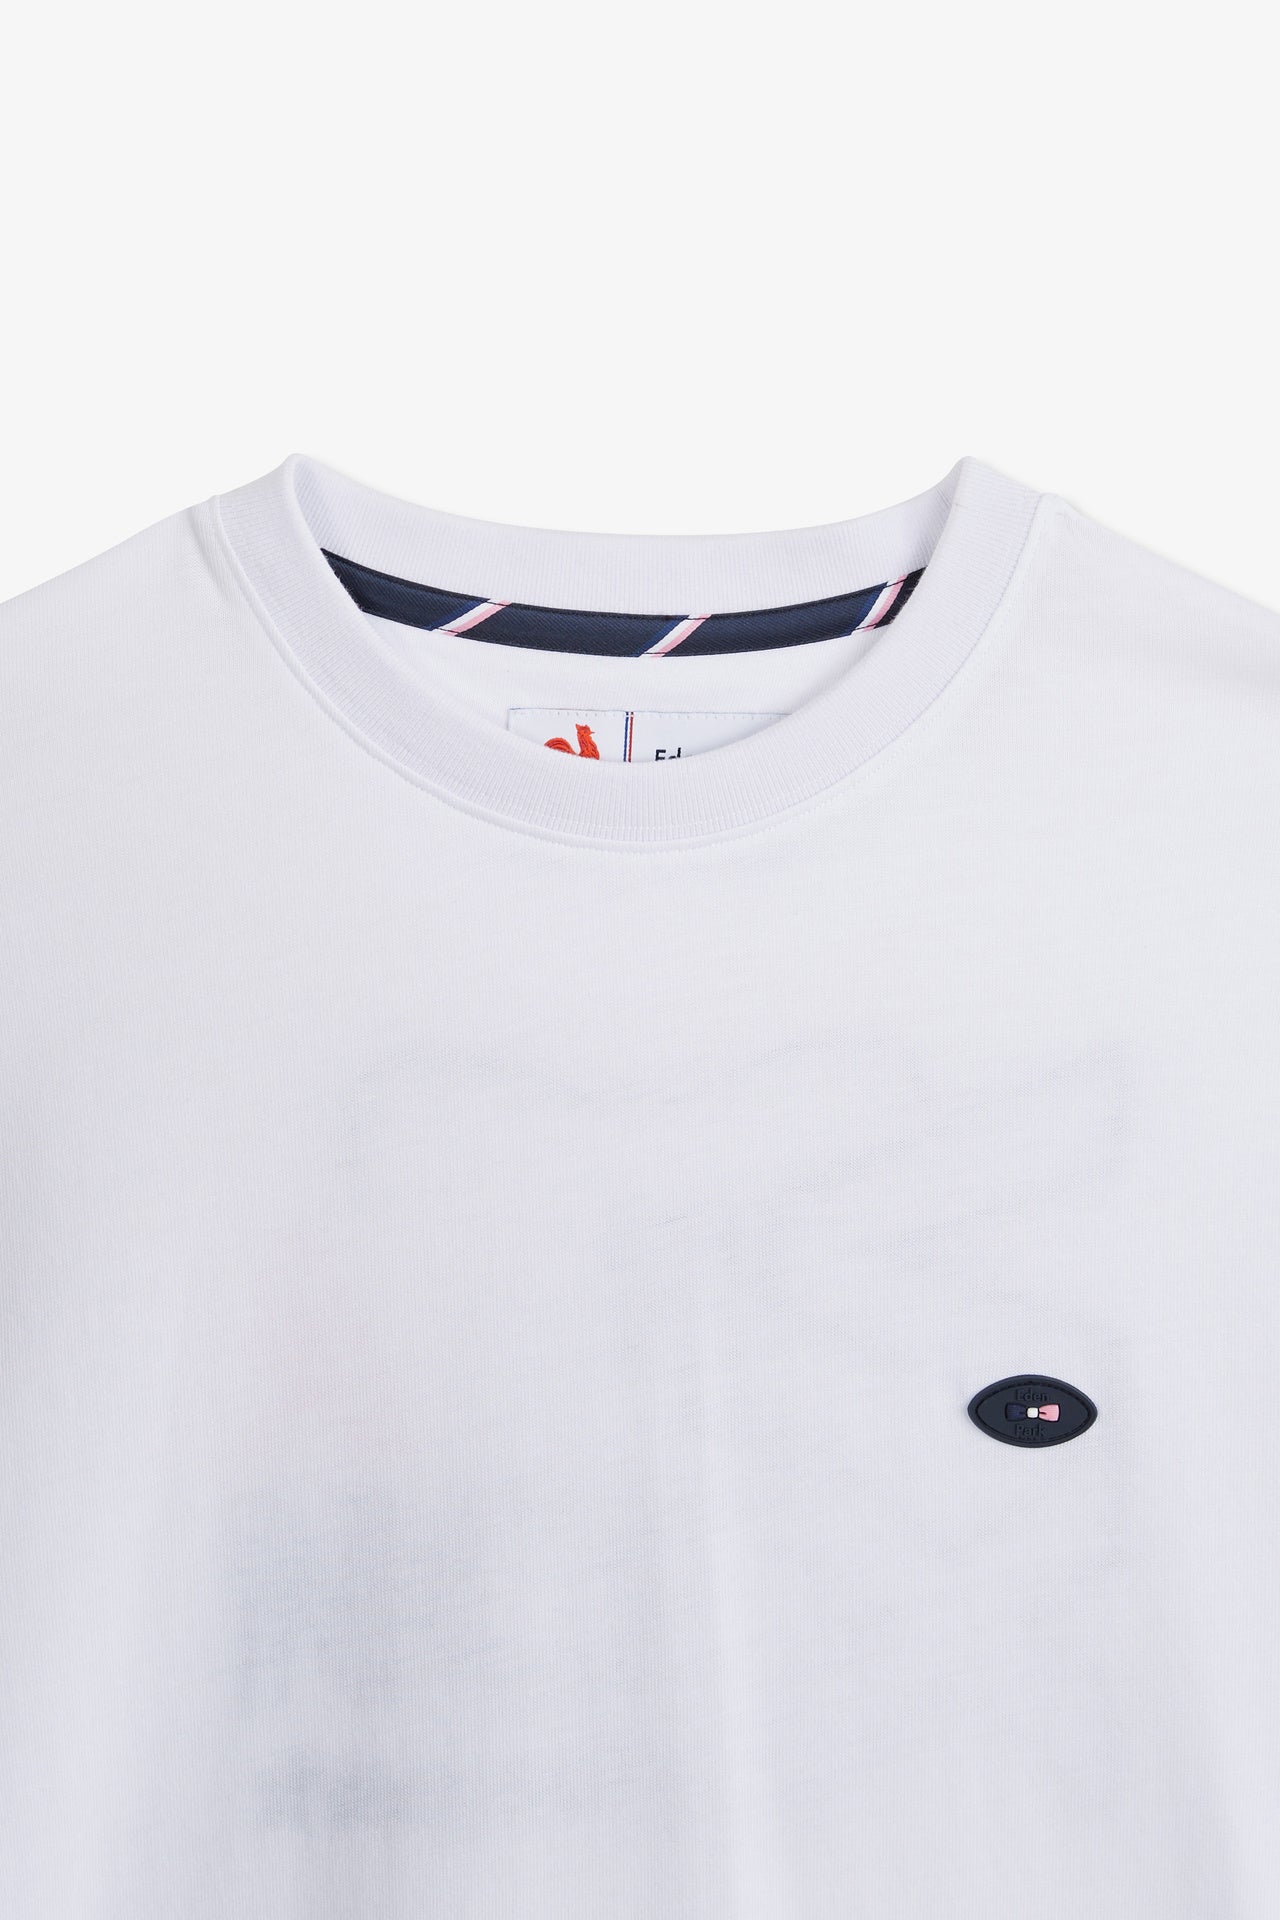 T-shirt blanc à broderie XV de France au dos - Image 8